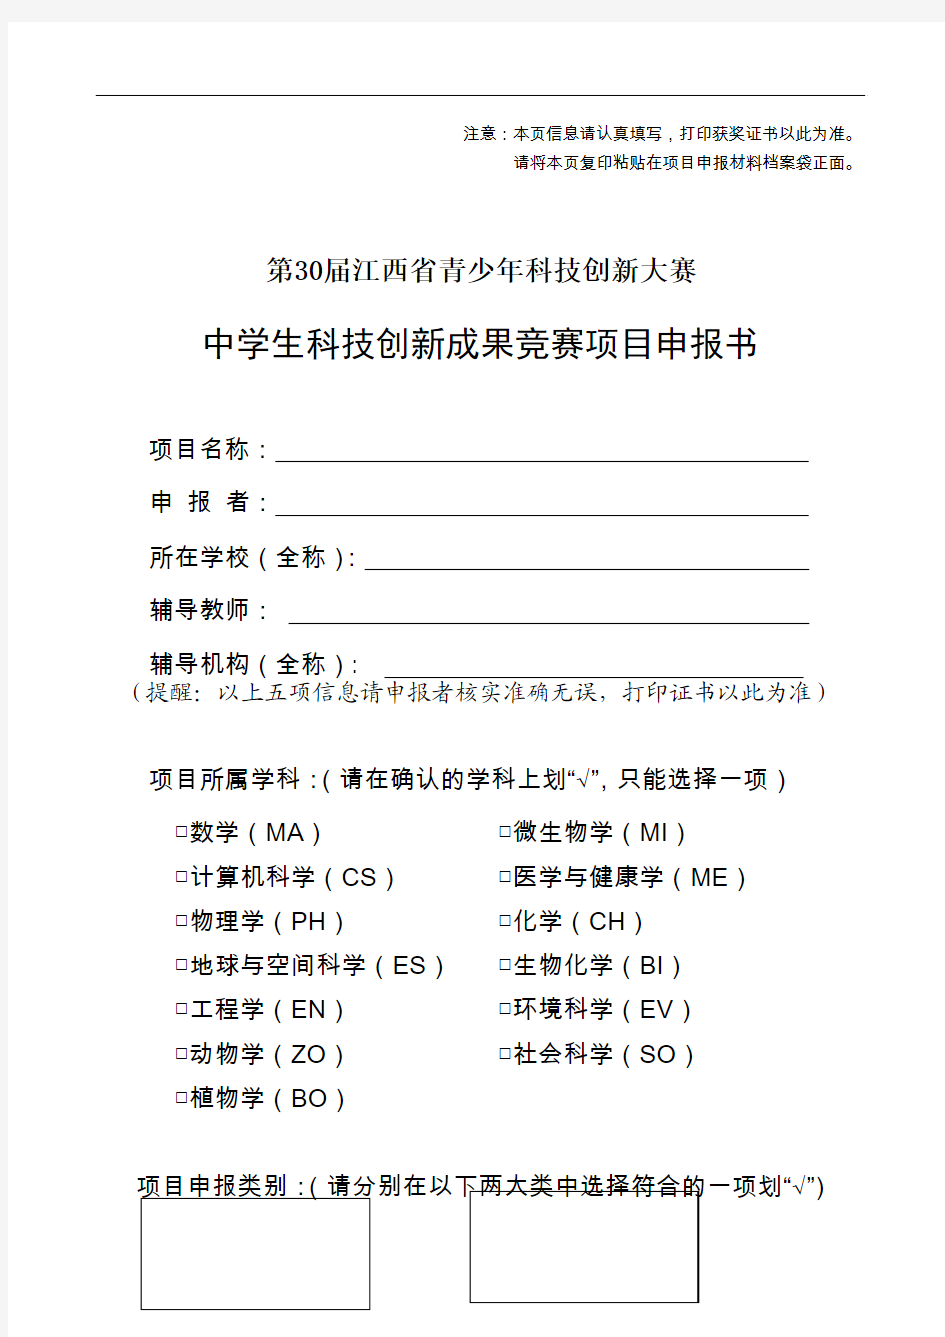 1、中学生科技创新成果项目申报书(样表)